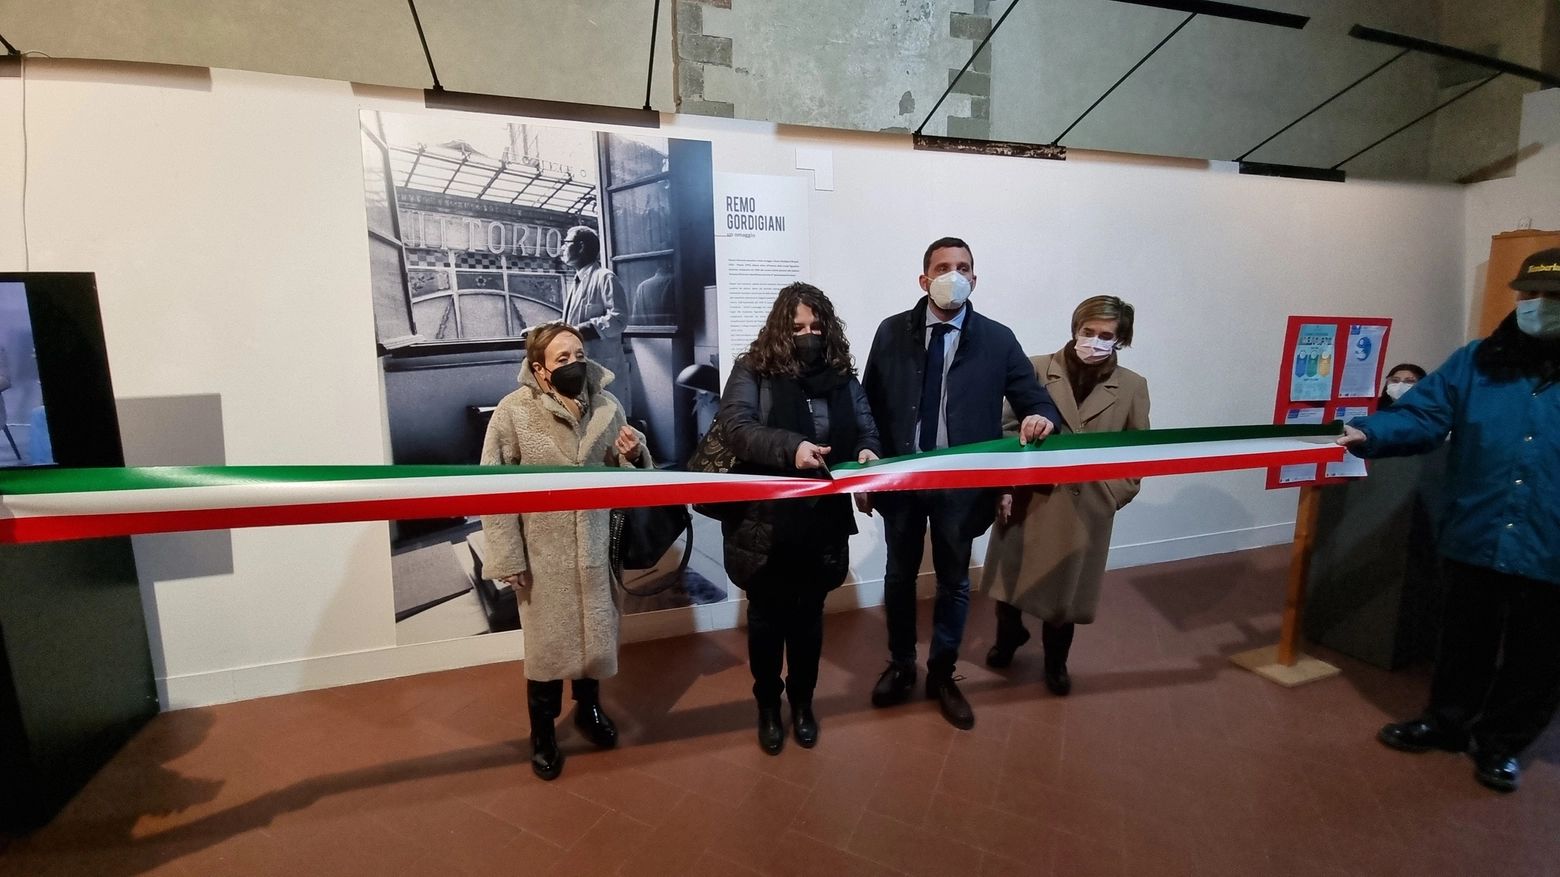 Pistoia rende omaggio al pittore Remo Gordigiani a 30 anni dalla morte